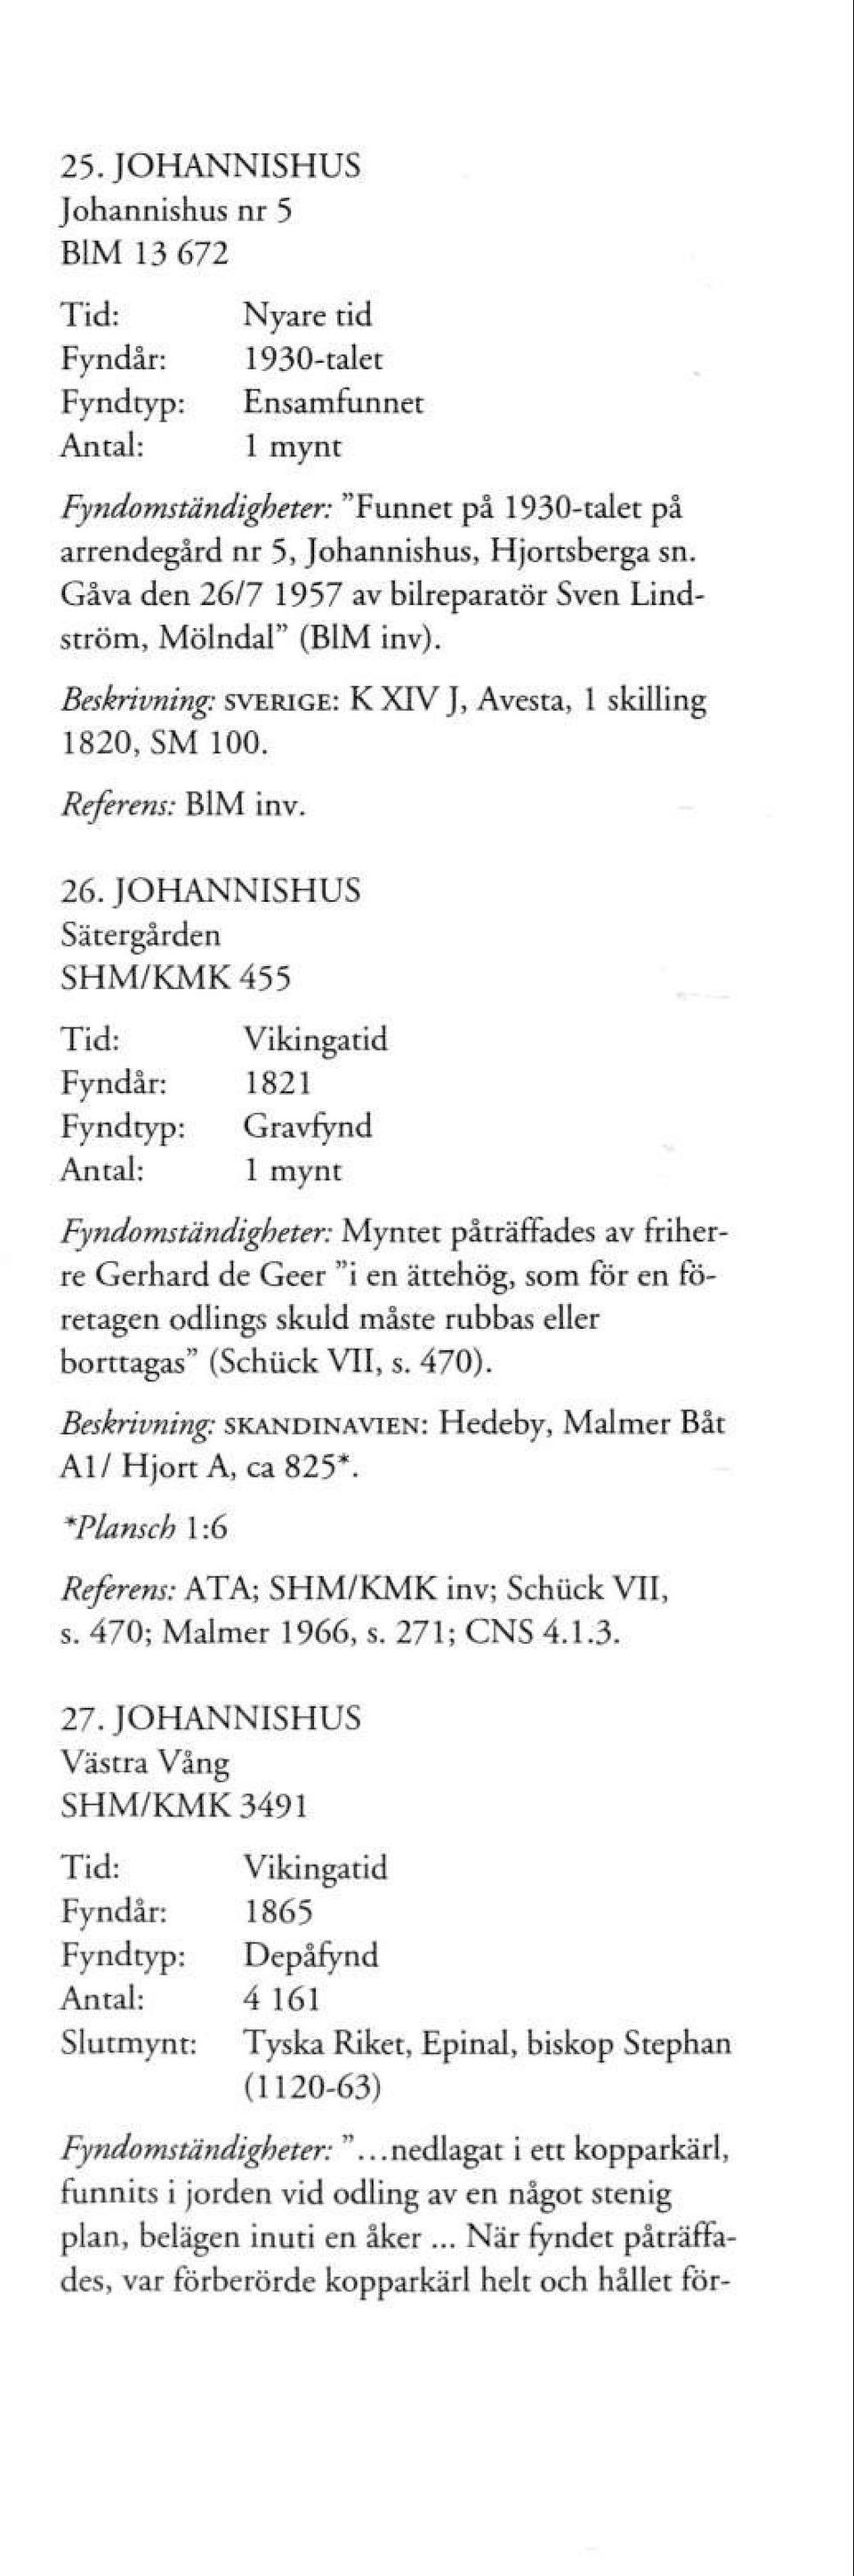 7 1957 av bilreparatör Sven Lindström, Mölndal" (B1M inv). Beskrivning: SVERIGE: K XIV J, Avesta, 1 skilling 1820, SM 100. Referens: B1M inv. 26.